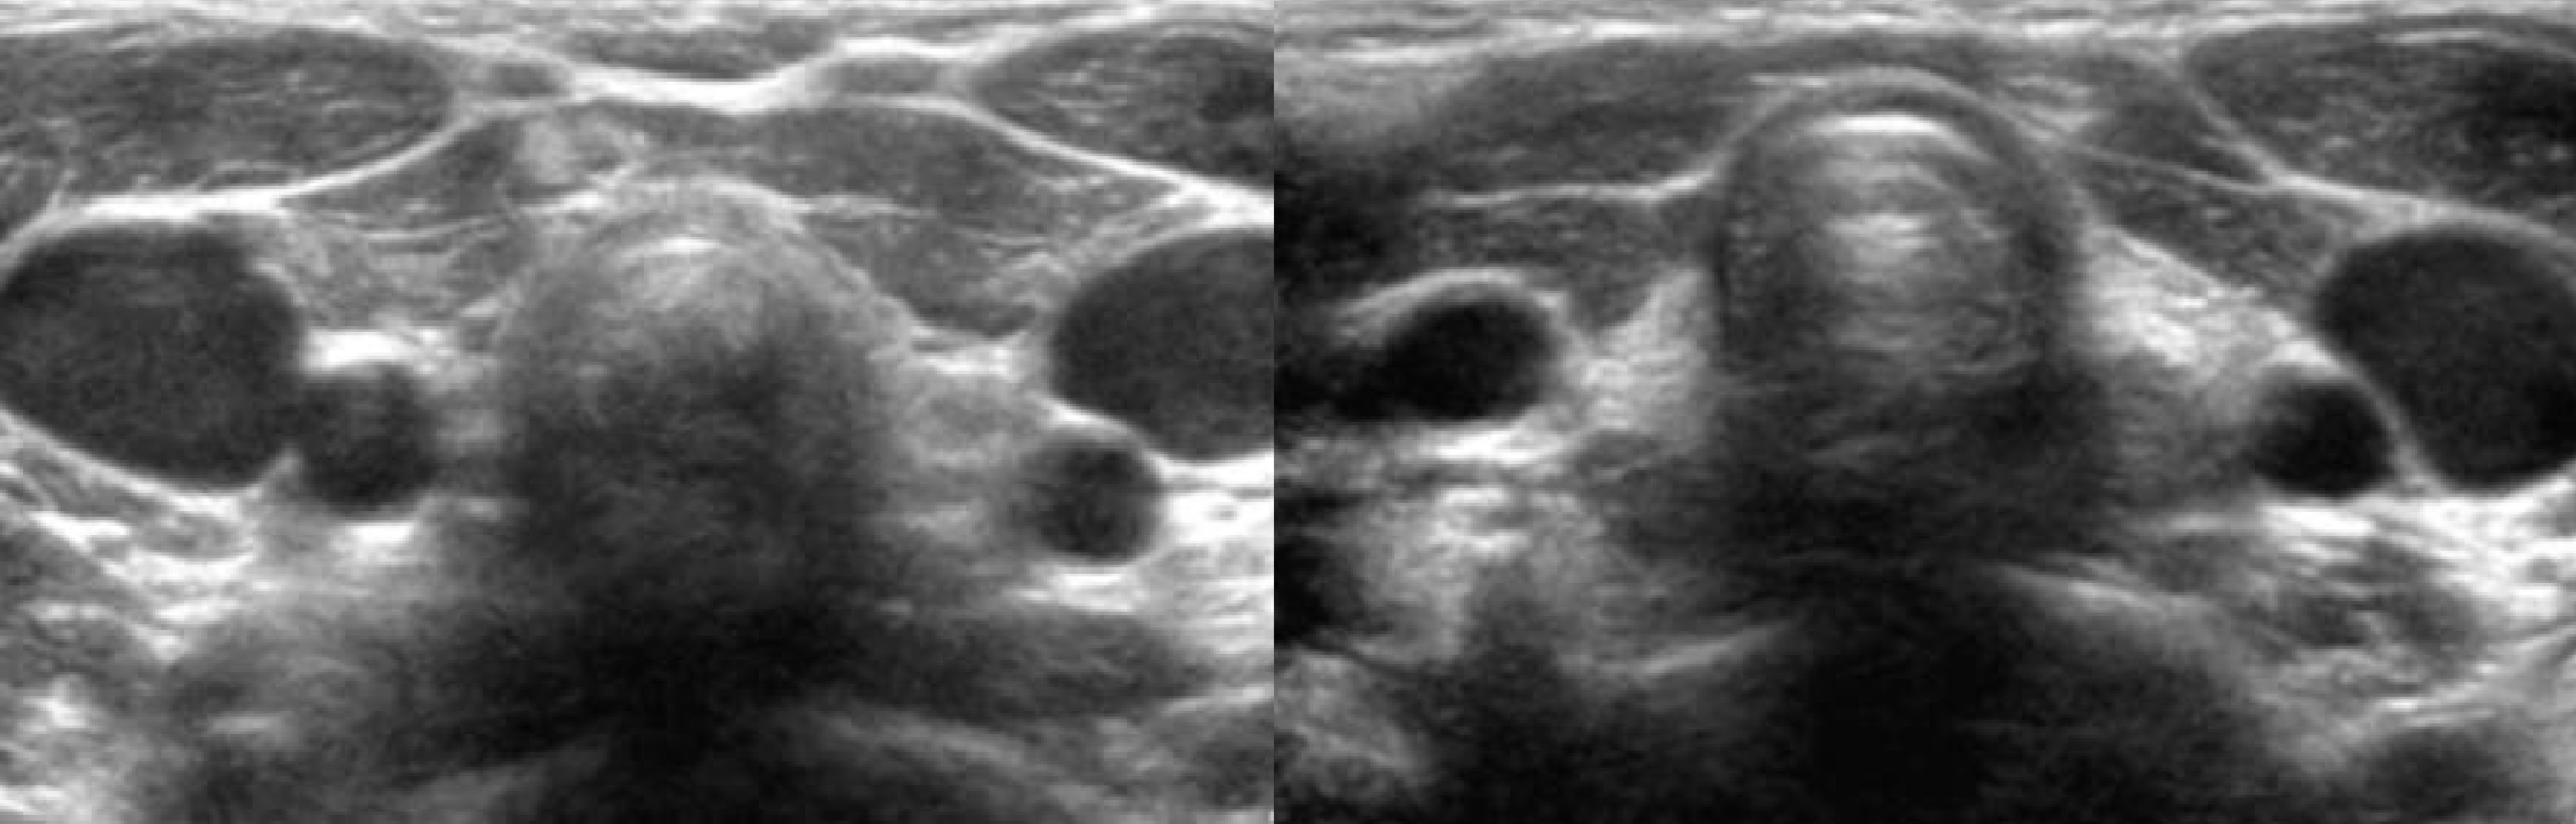 Аплазия щитовидной железы на УЗИ